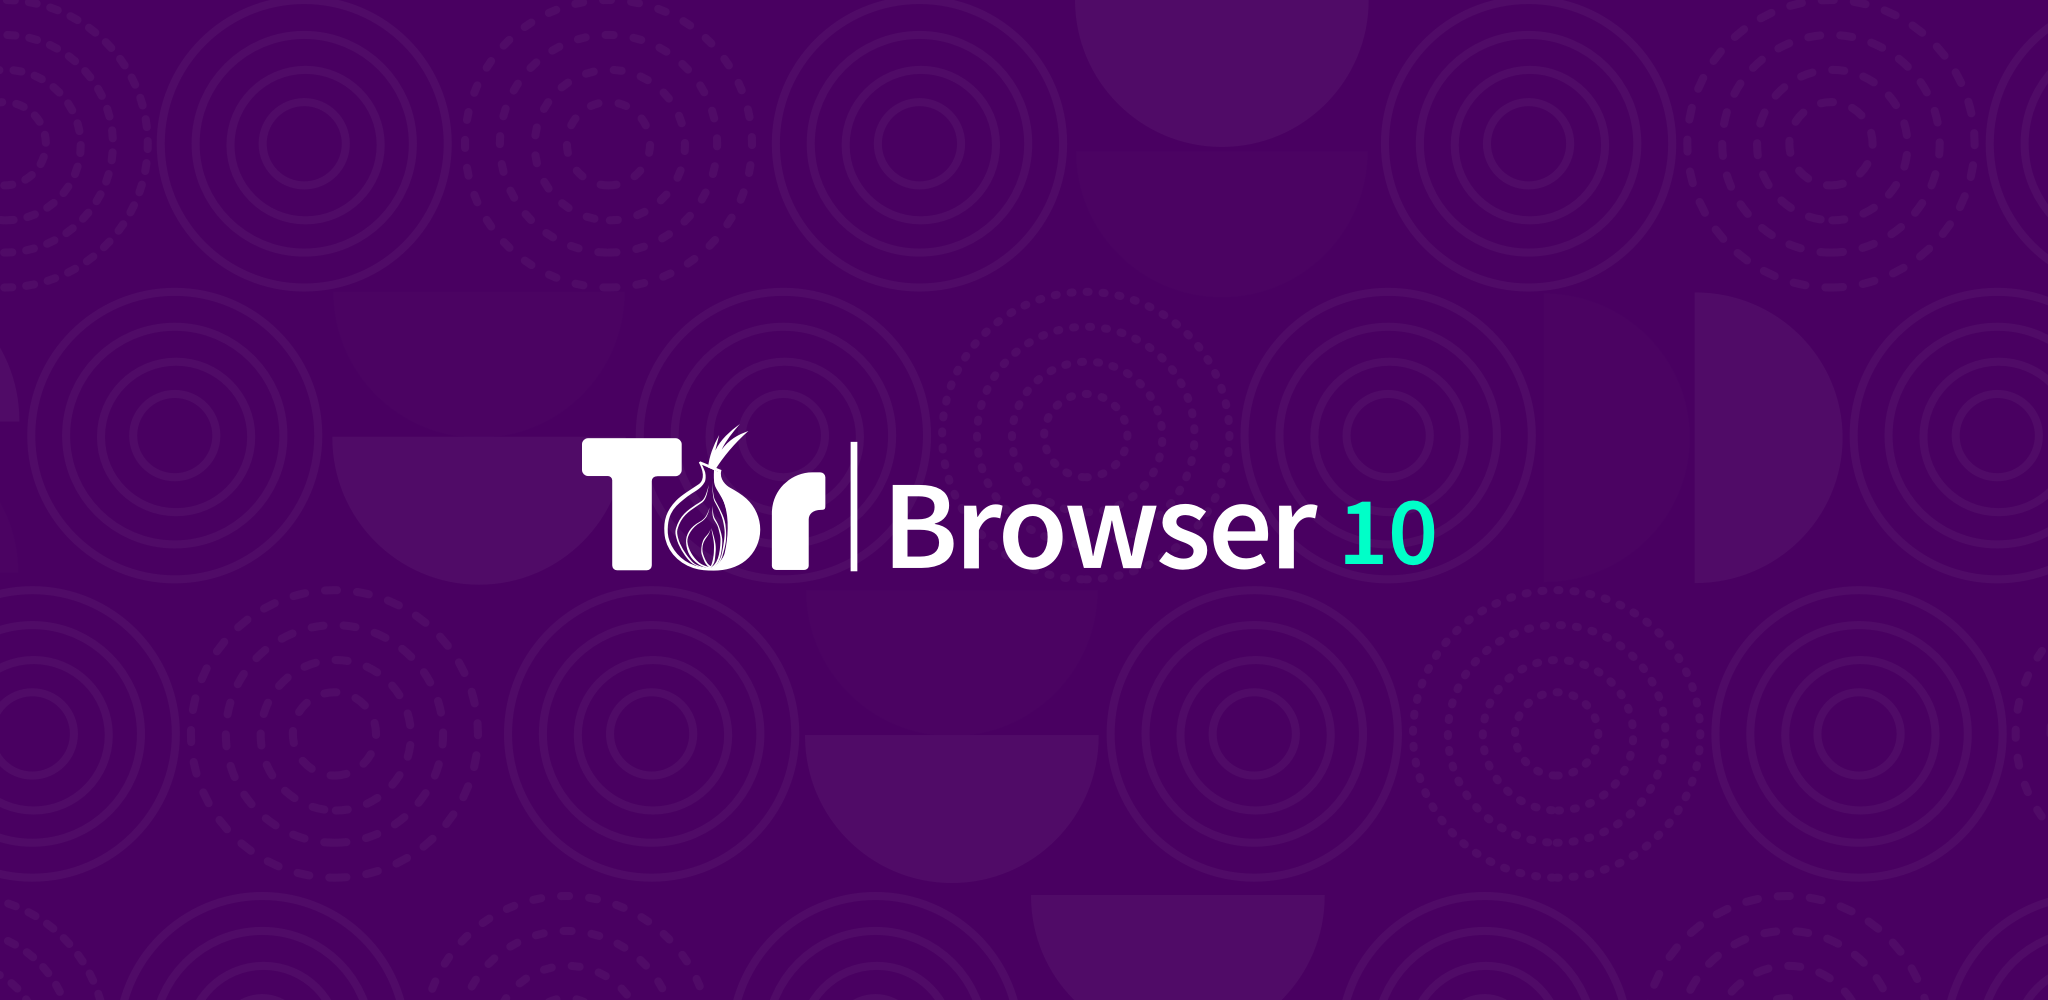 Tor browser bundle windows mega на браузере тор поменять язык mega